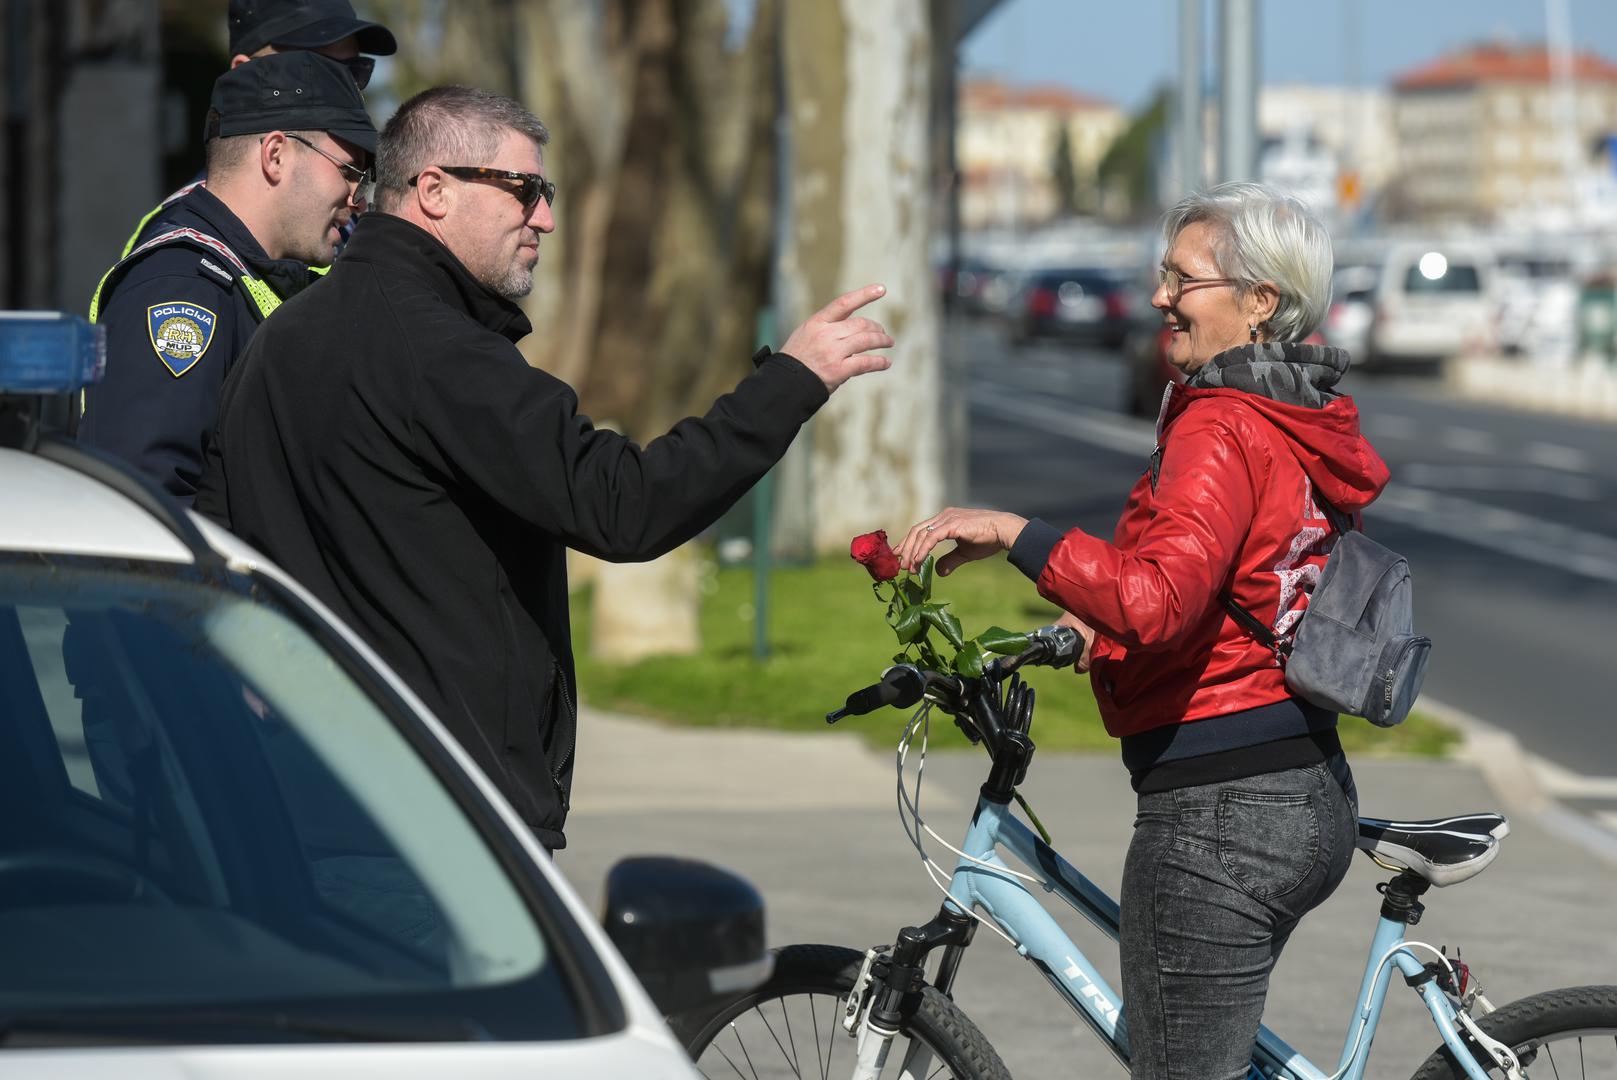  Zadarska policija je u akciji povodom Dana žena zaustavljala sudionice u prometu i darivala ih ružama